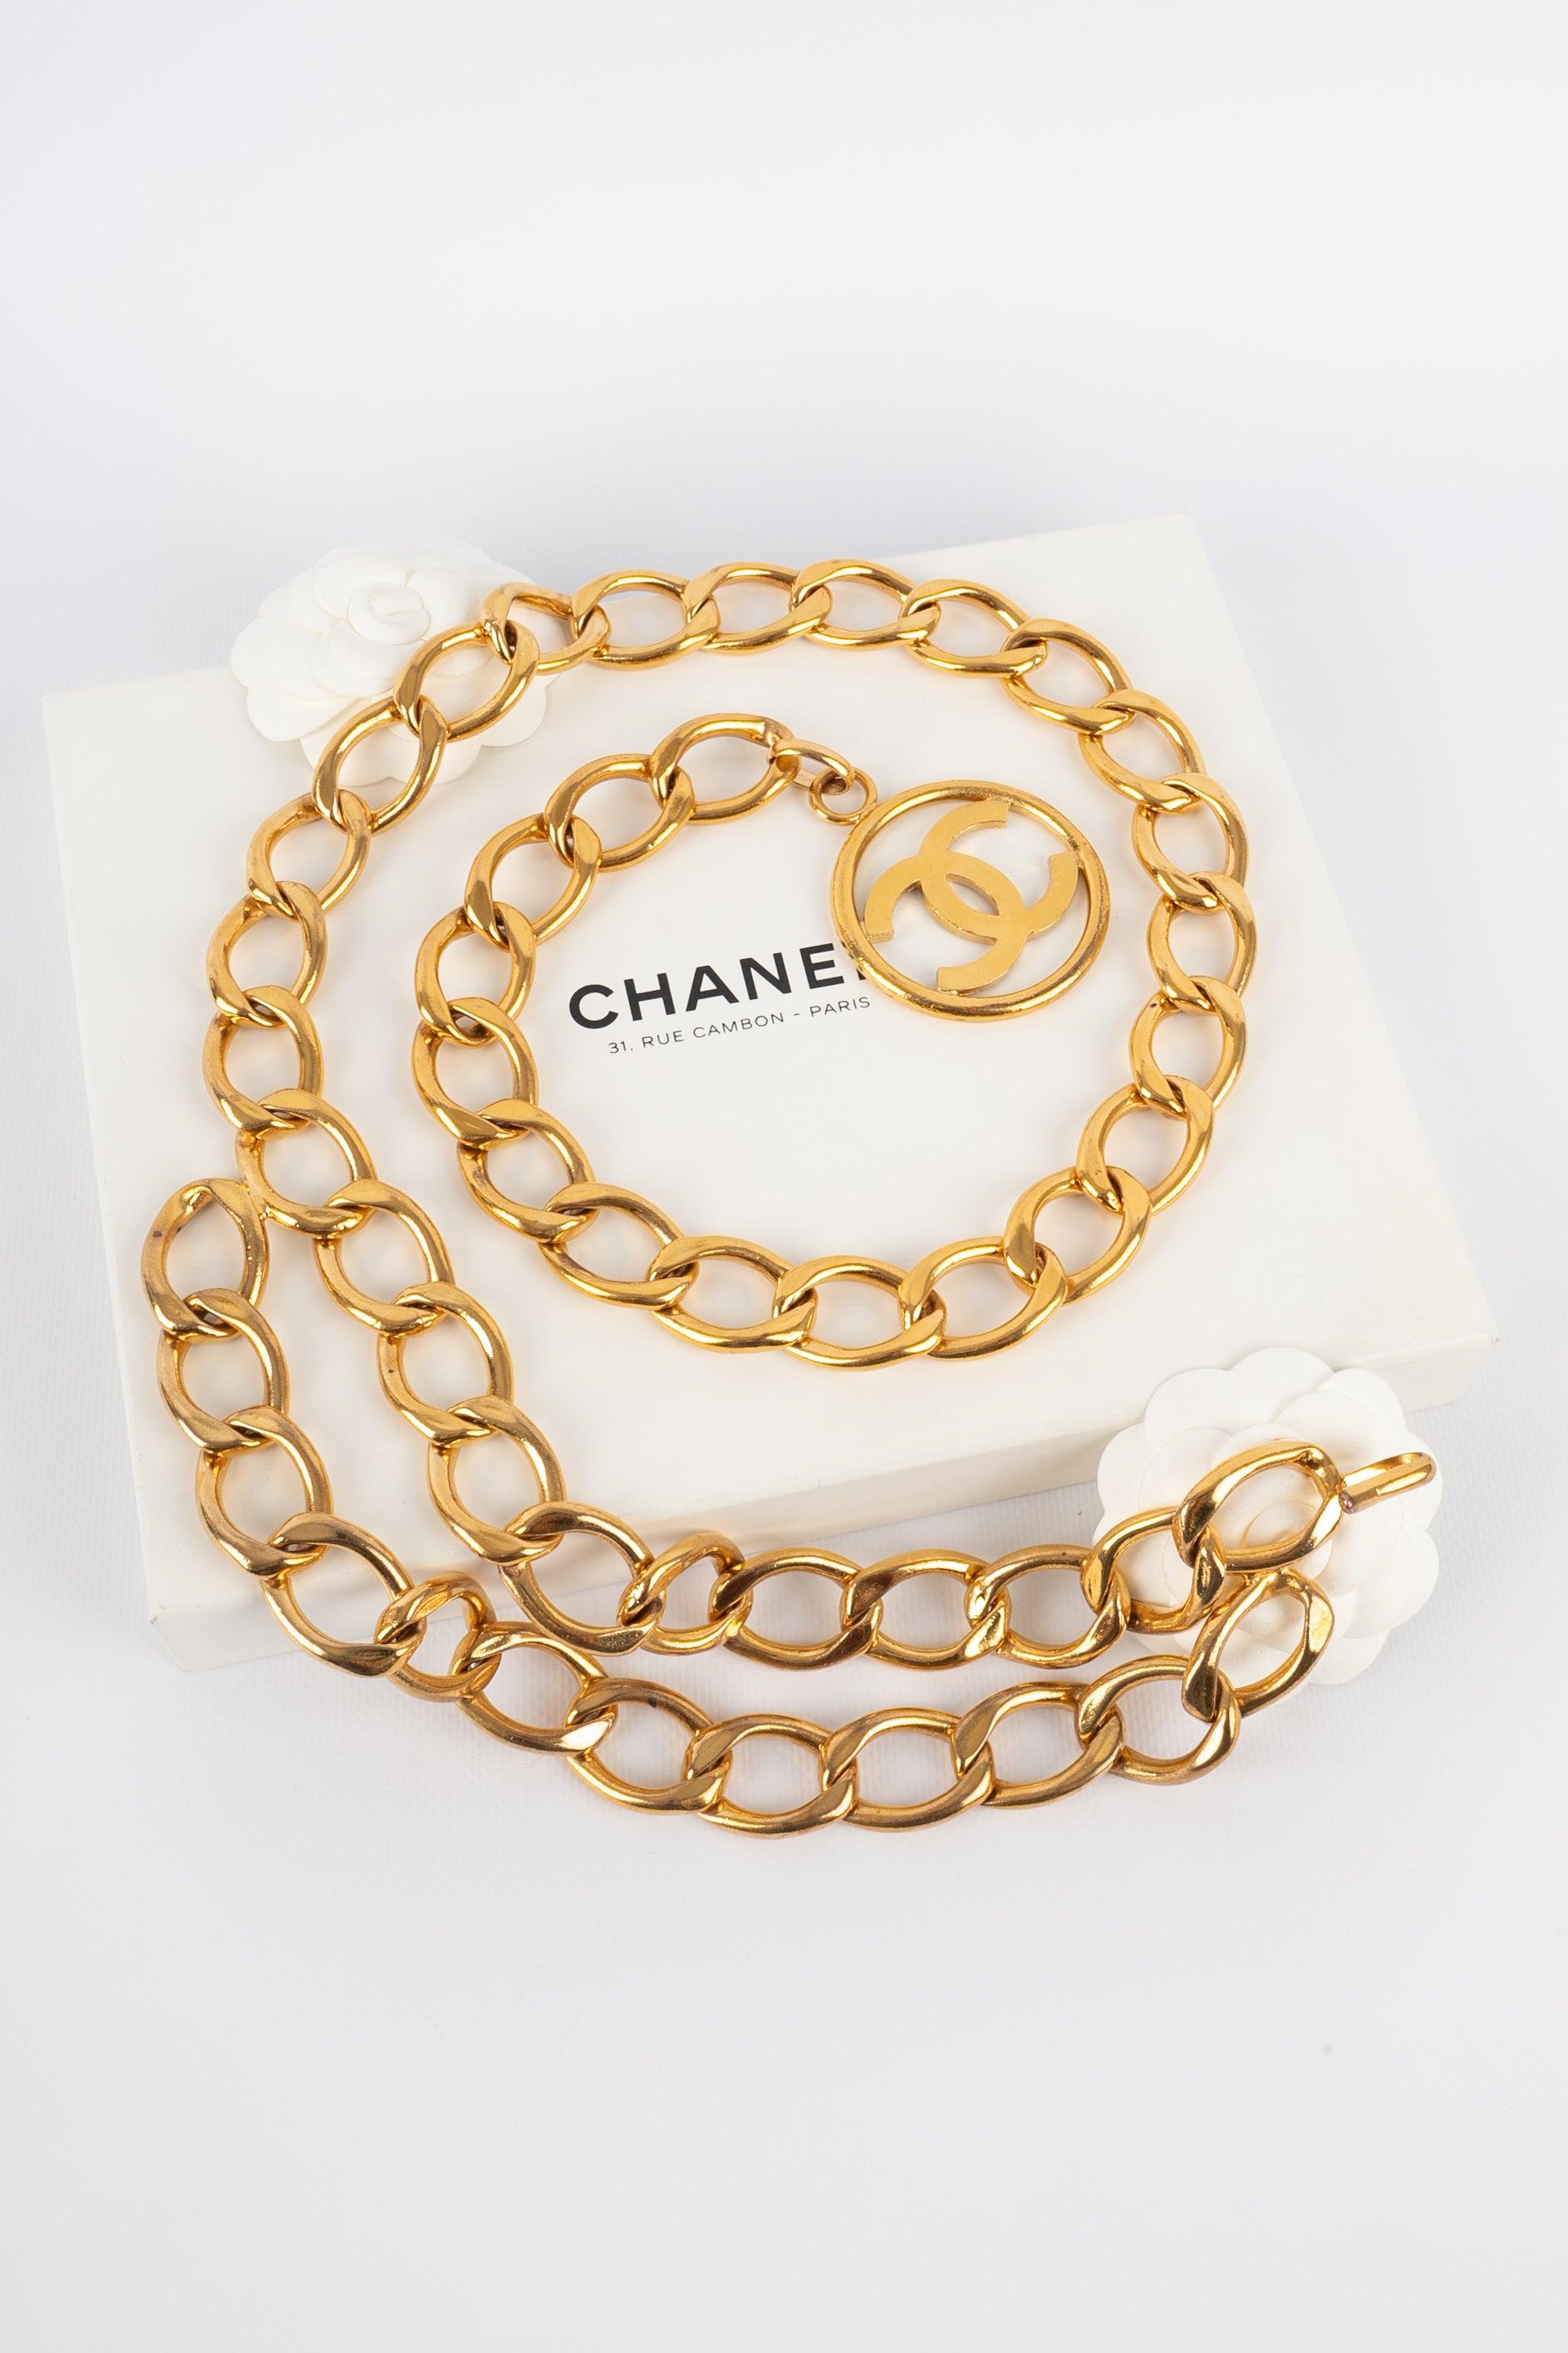 Chanel Golden Metal Belt, 2009 For Sale 4